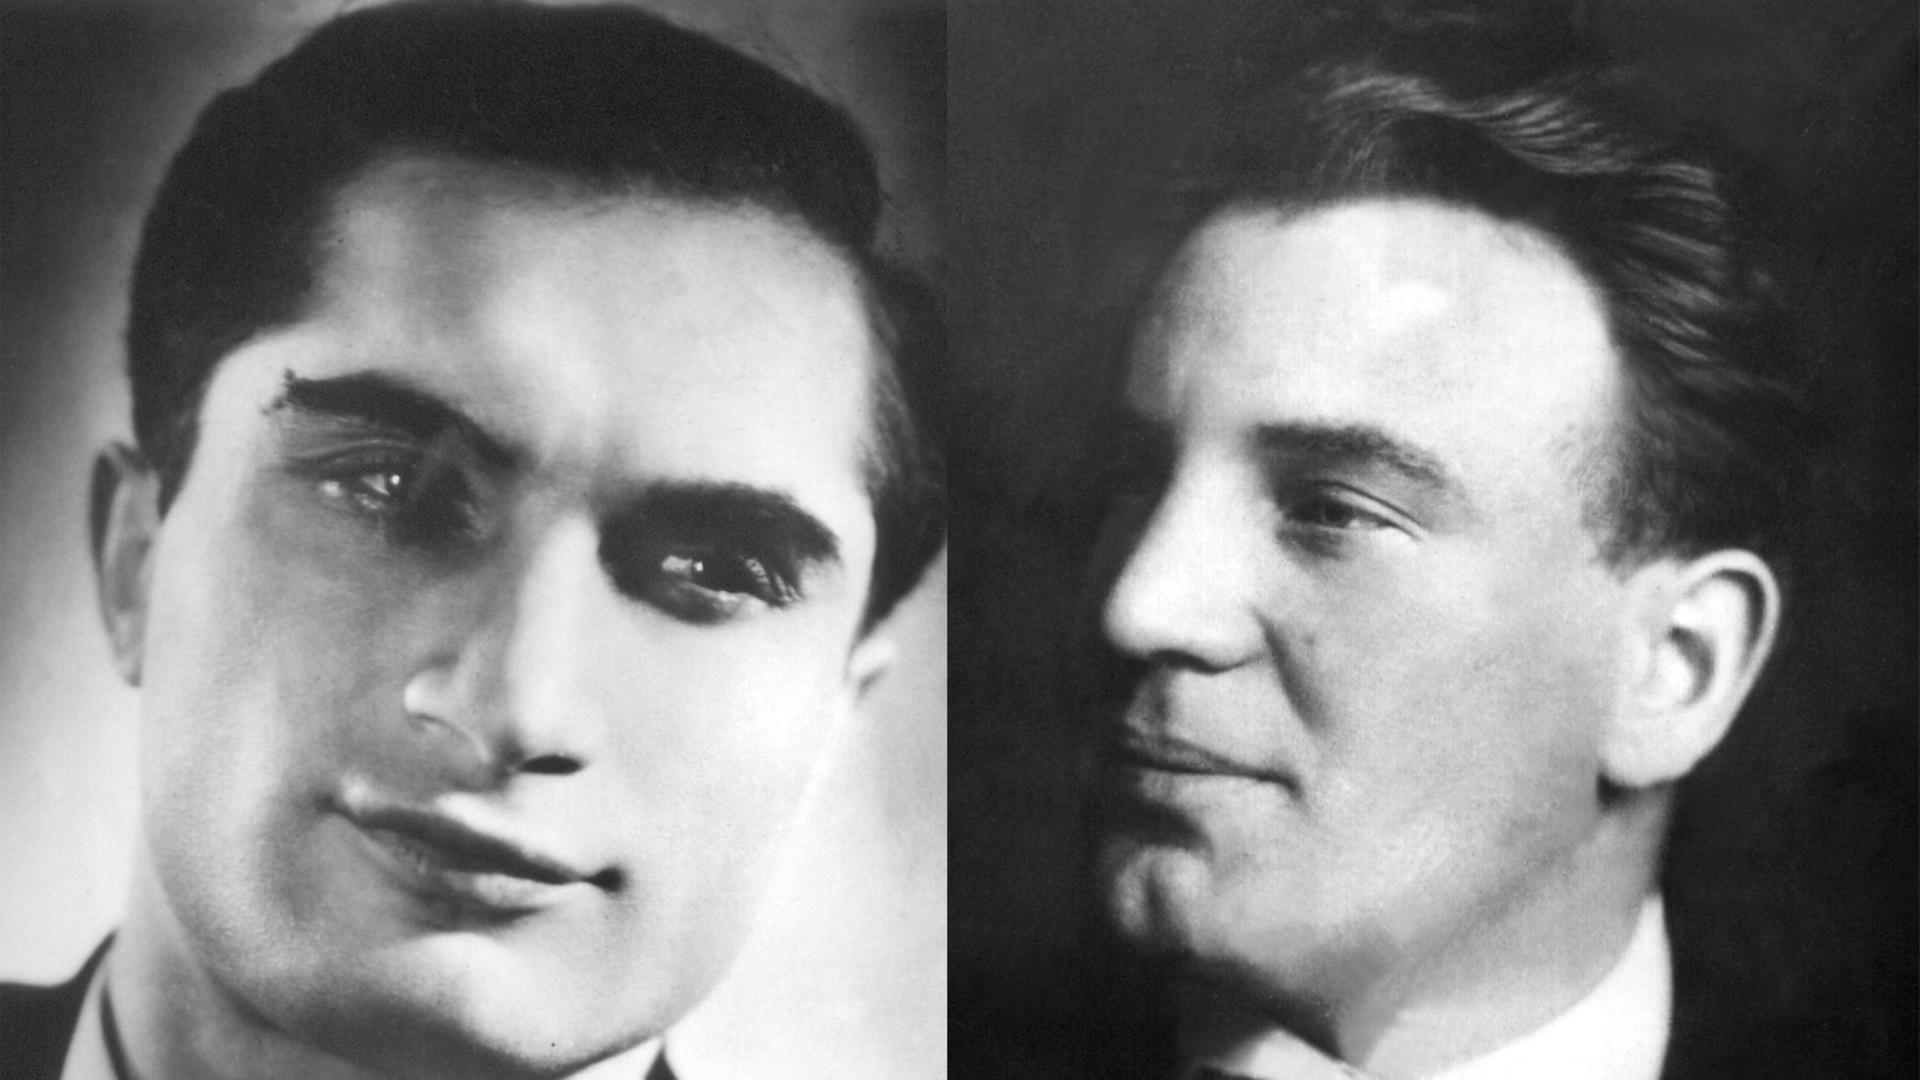 Kombination aus zwei Bildern: Links der rumänische Sänger (Tenor) Joseph Schmidt (undatiert), rechts der österreichische Kammersänger Richard Tauber in einer undatieren Aufnahme.